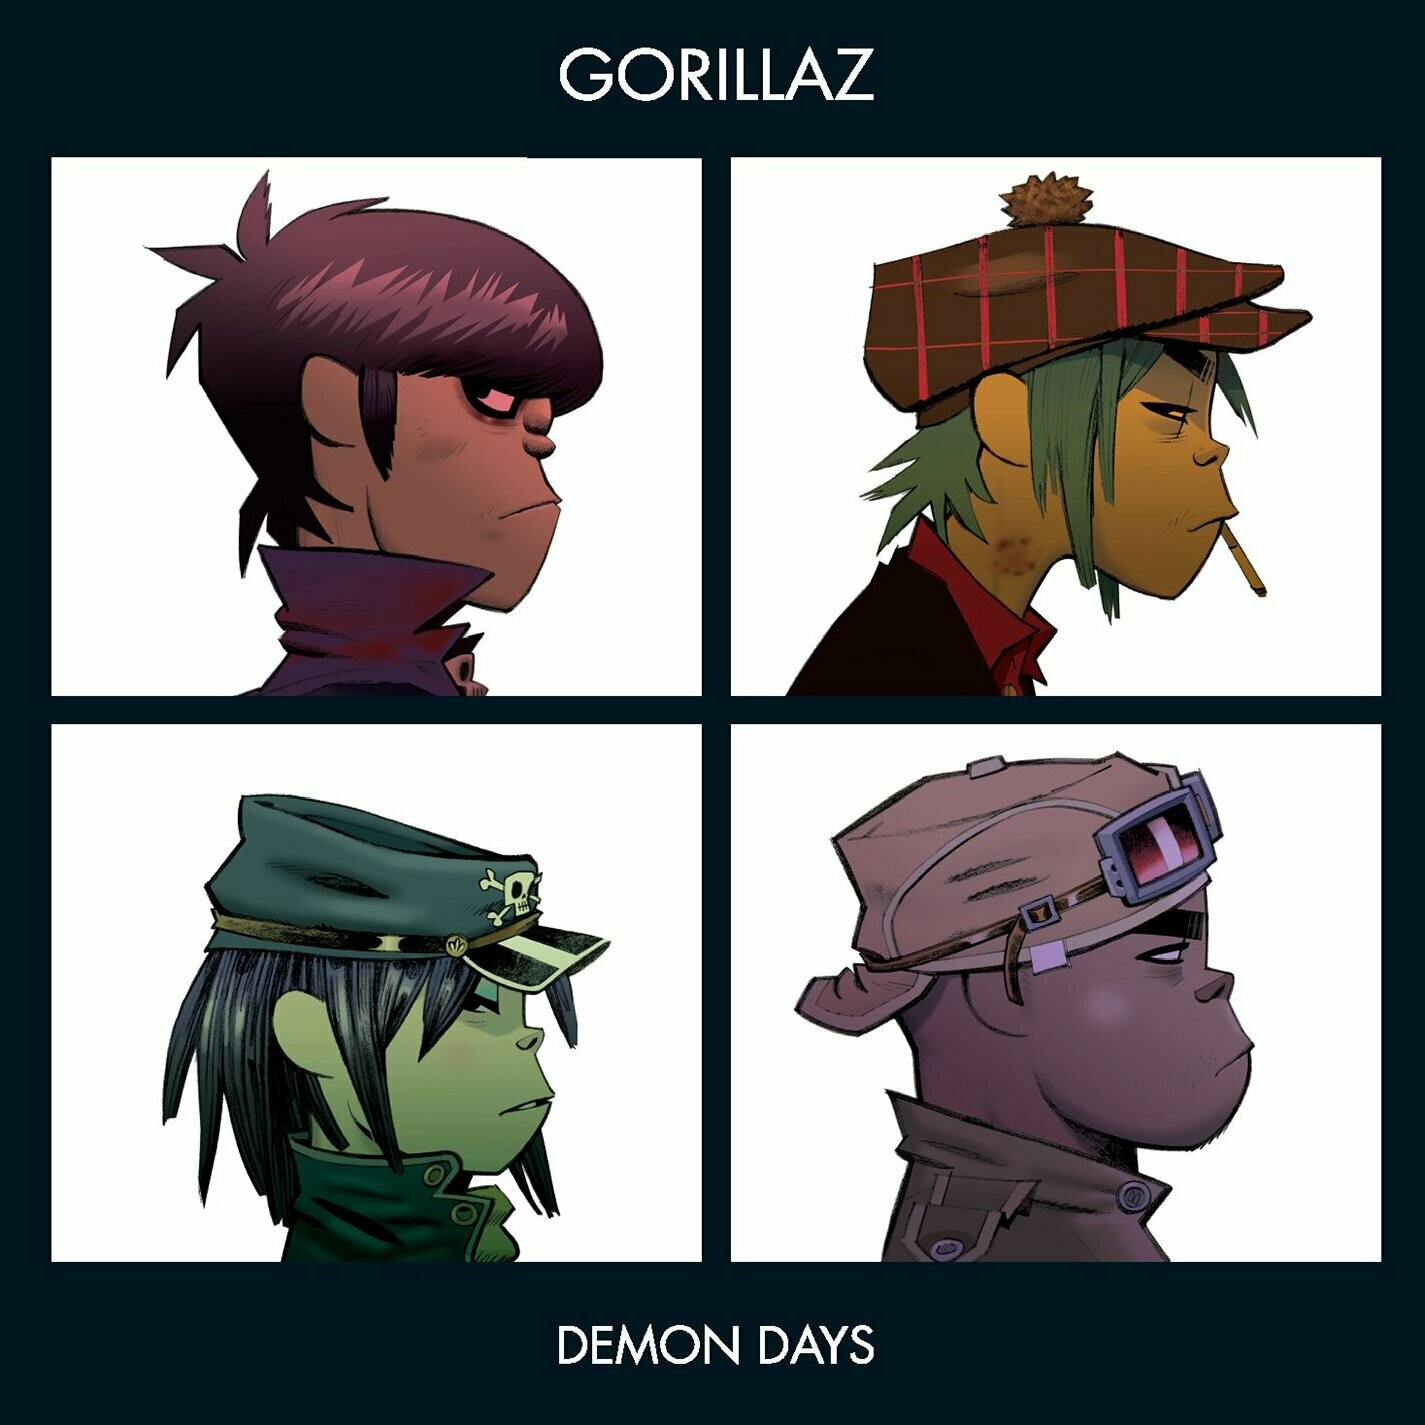 Gorillaz "Demon Days"